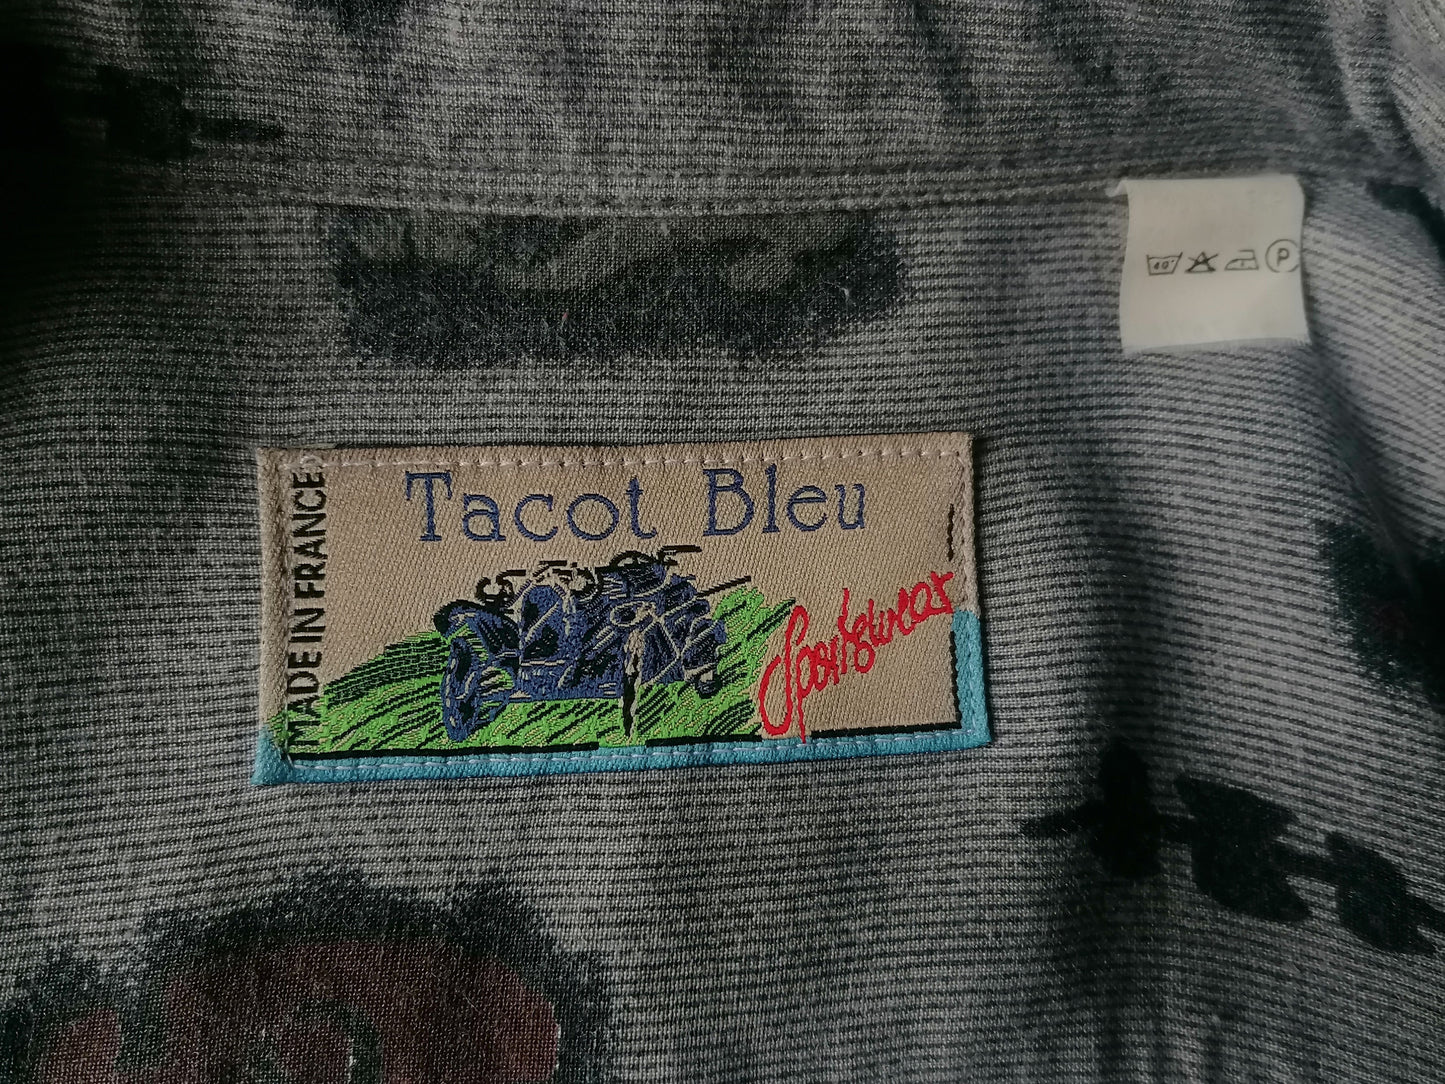 Camisa Vintage Tacot Bleu. Impresión roja marrón gris. Tamaño xl. 100% viscoso.